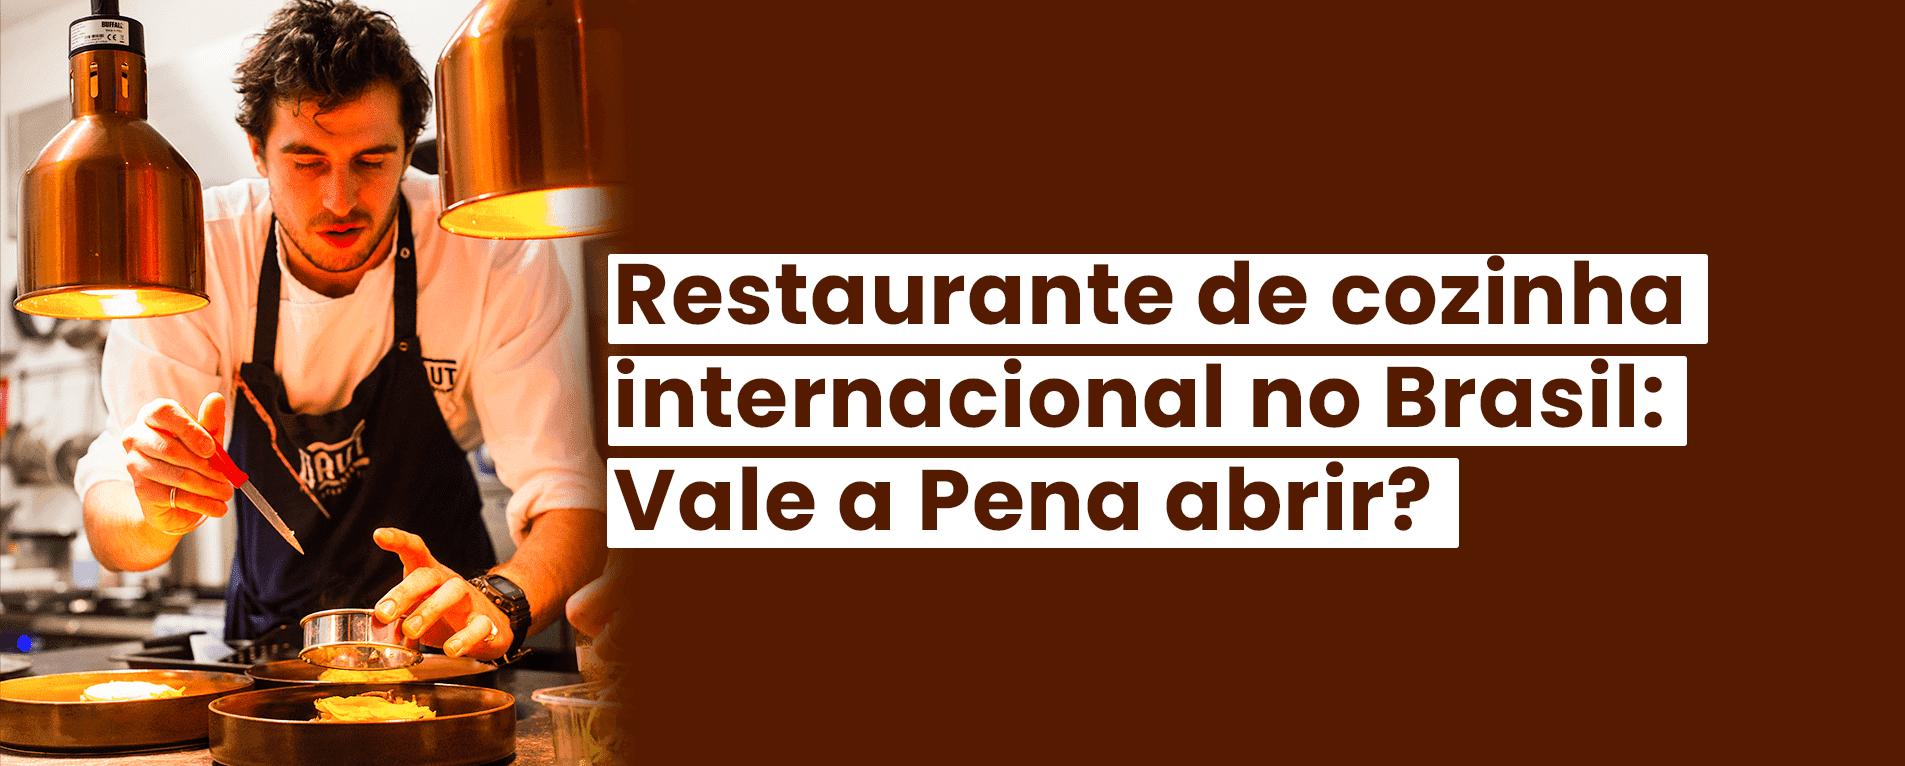 Restaurante de Cozinha Internacional no Brasil: Vale a Pena Abrir?